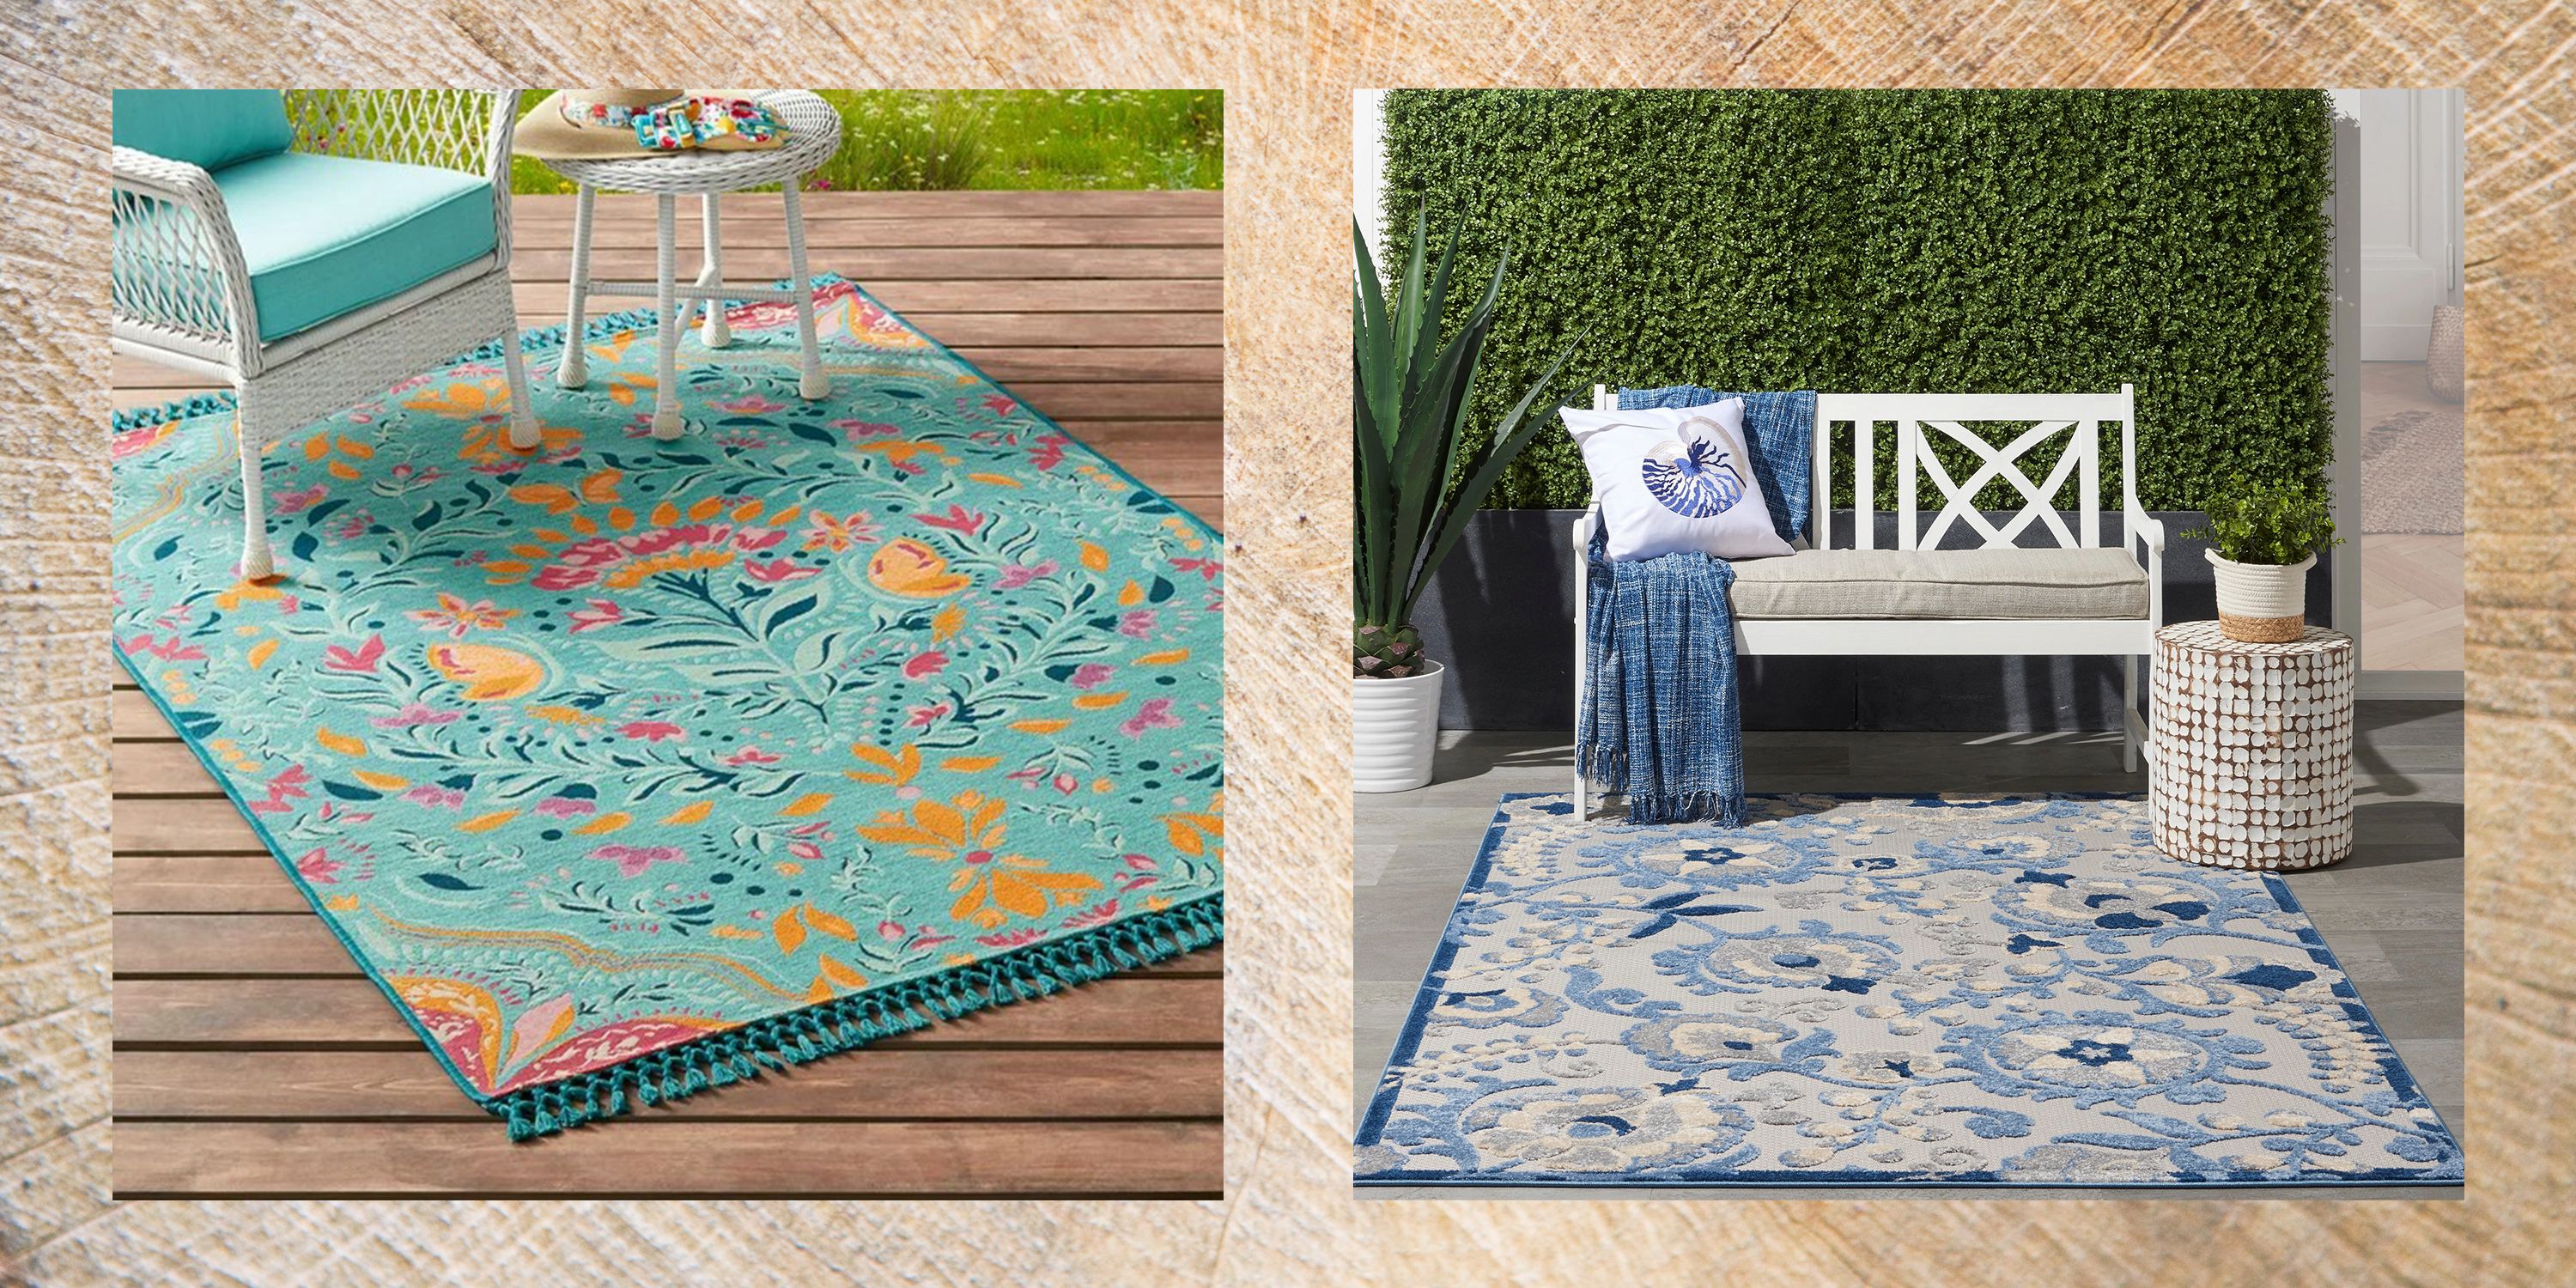 10 Mudroom Rugs ideas  rugs, outdoor rugs, cool rugs